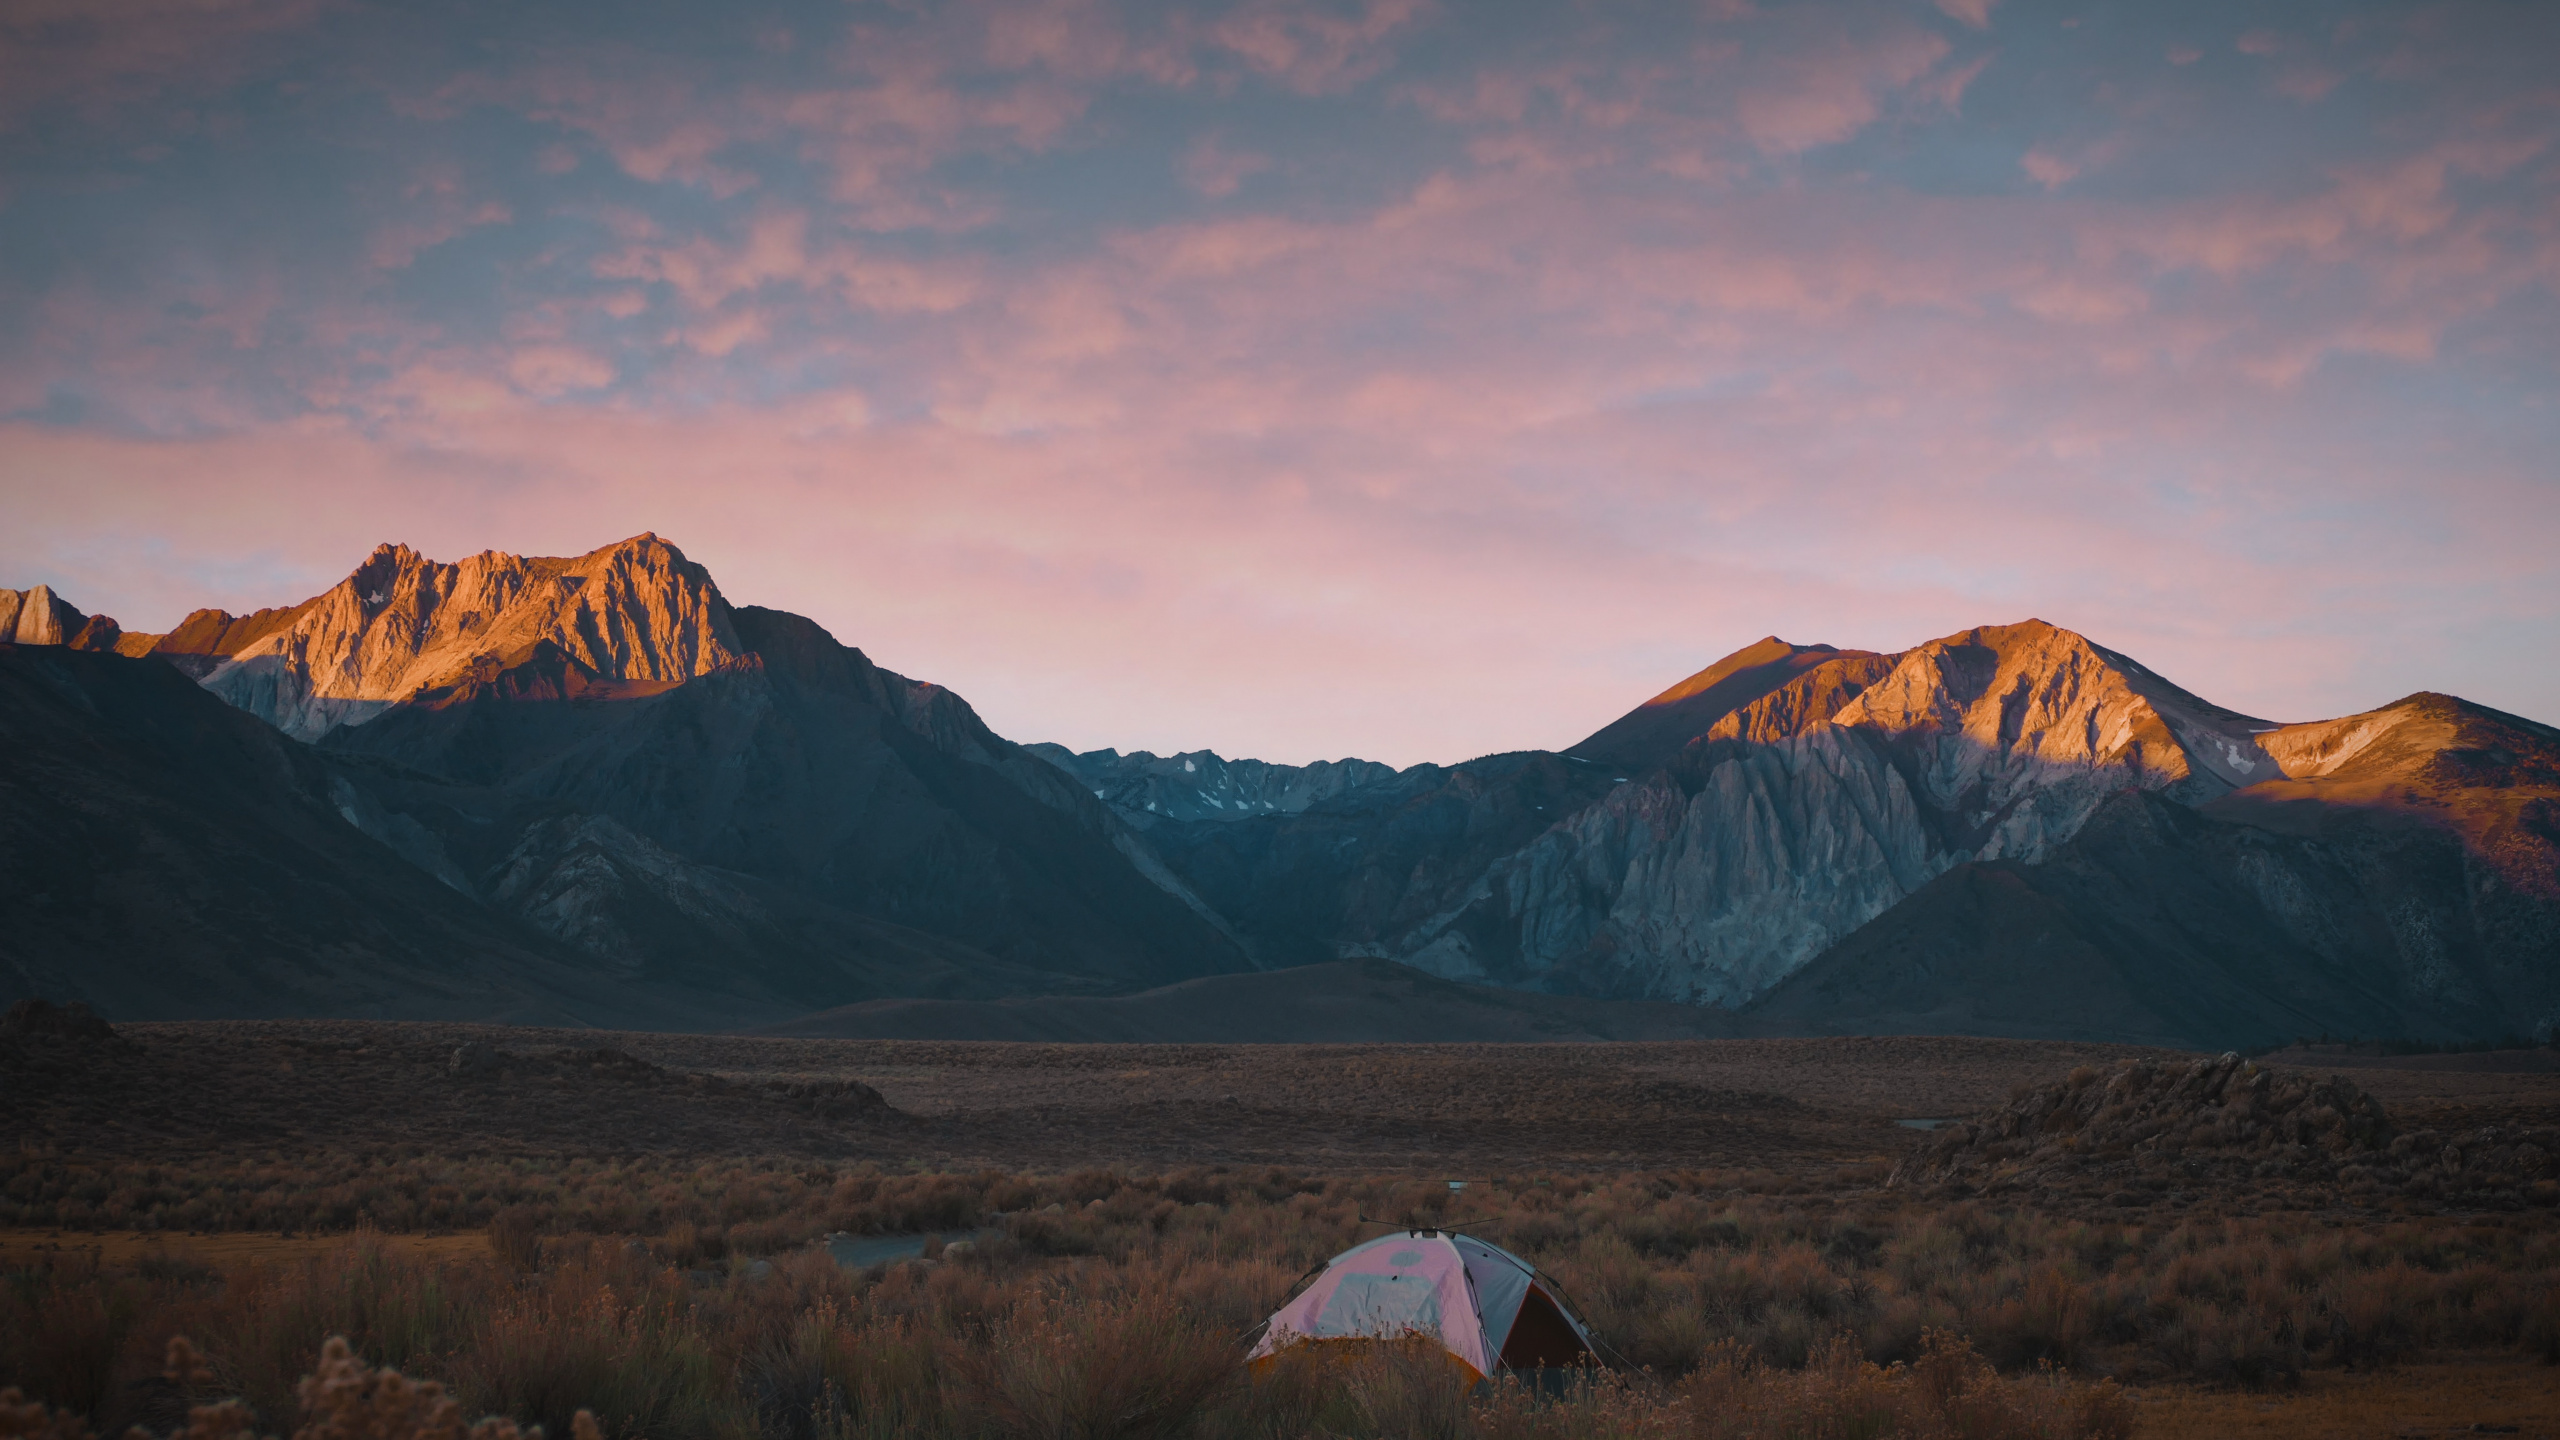 Desierto, Camping, Las Formaciones Montañosas, Montaje de Escenografía, Colina. Wallpaper in 2560x1440 Resolution